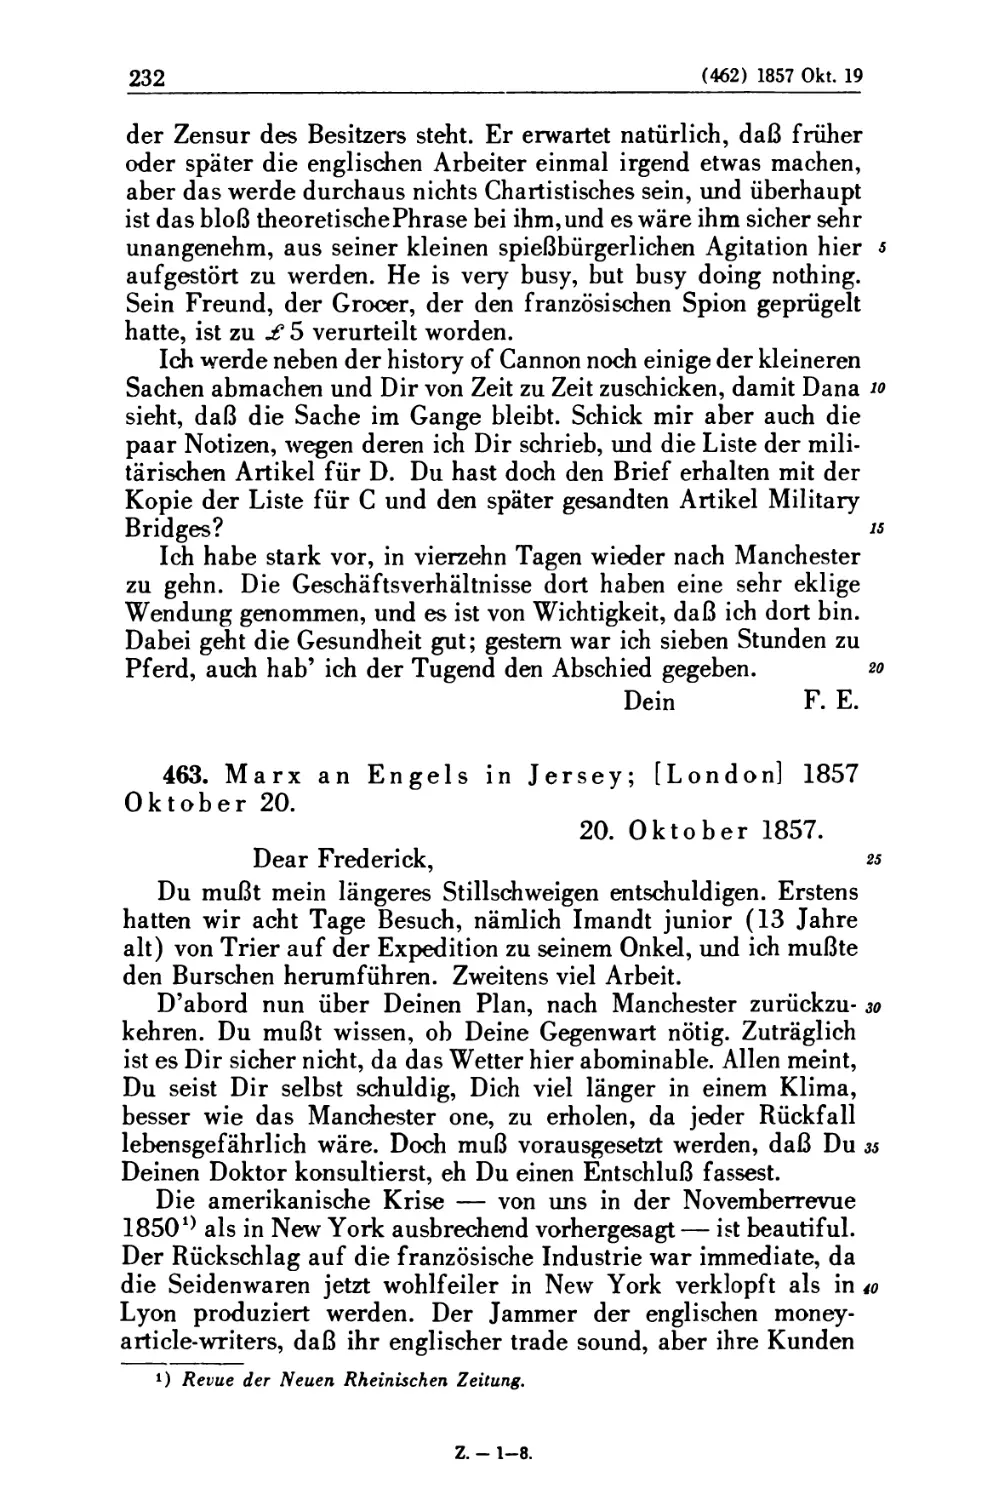 463. Marx an Engels in Jersey; [London] 1857 Oktober 20